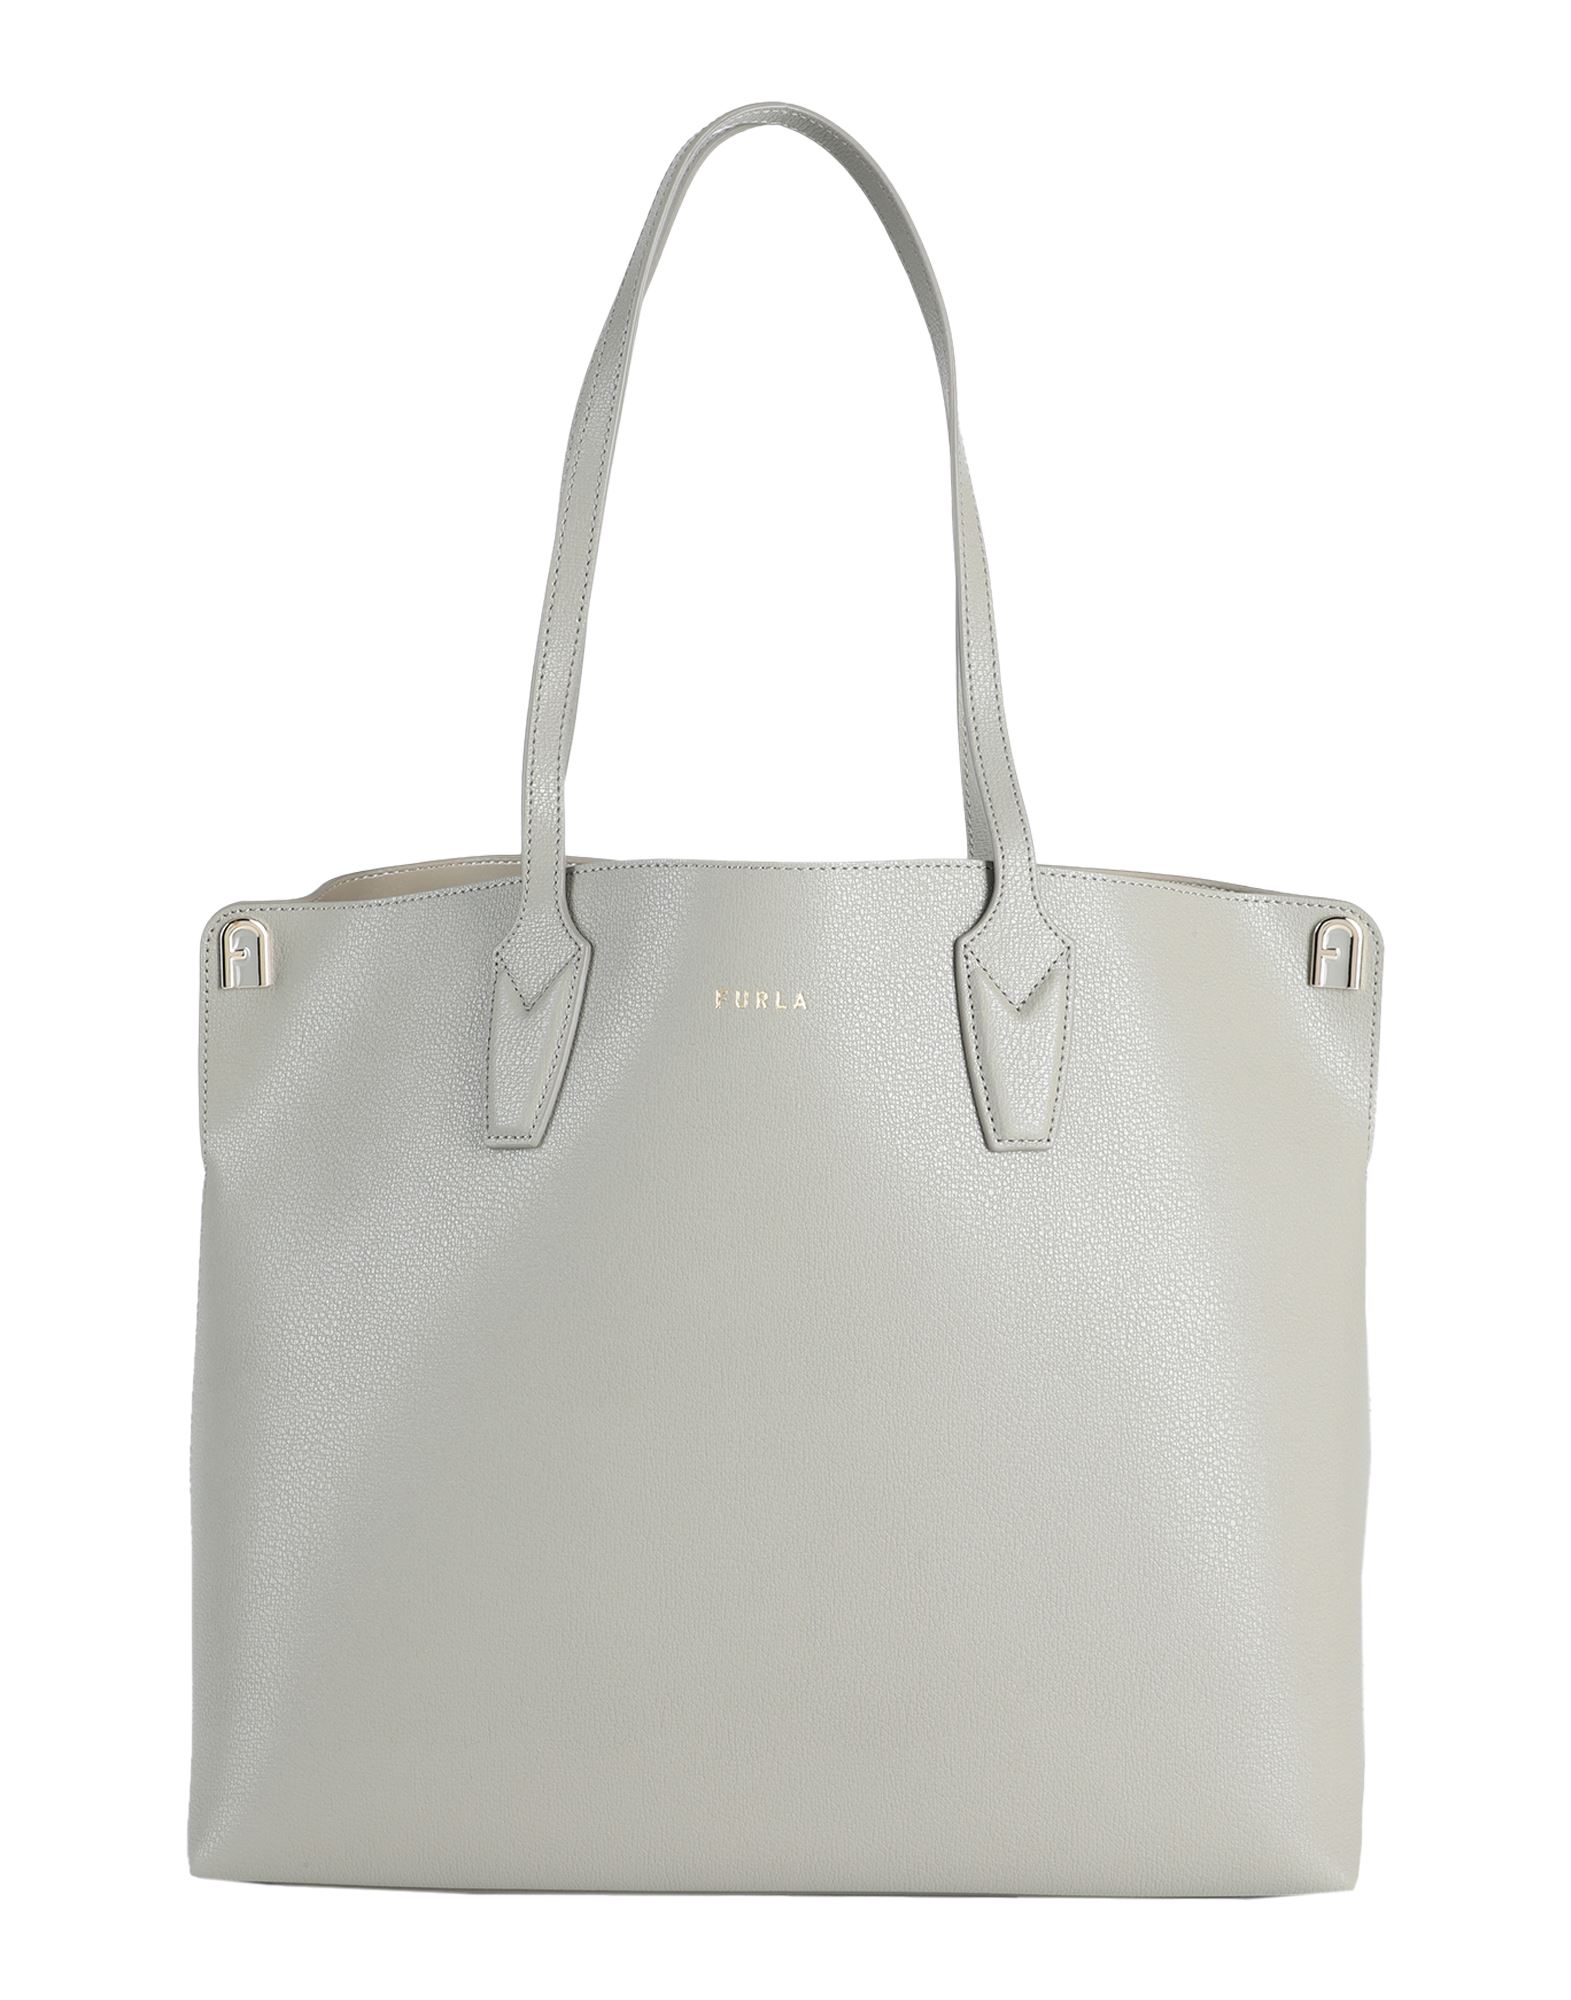 Furla Handbags In Grey